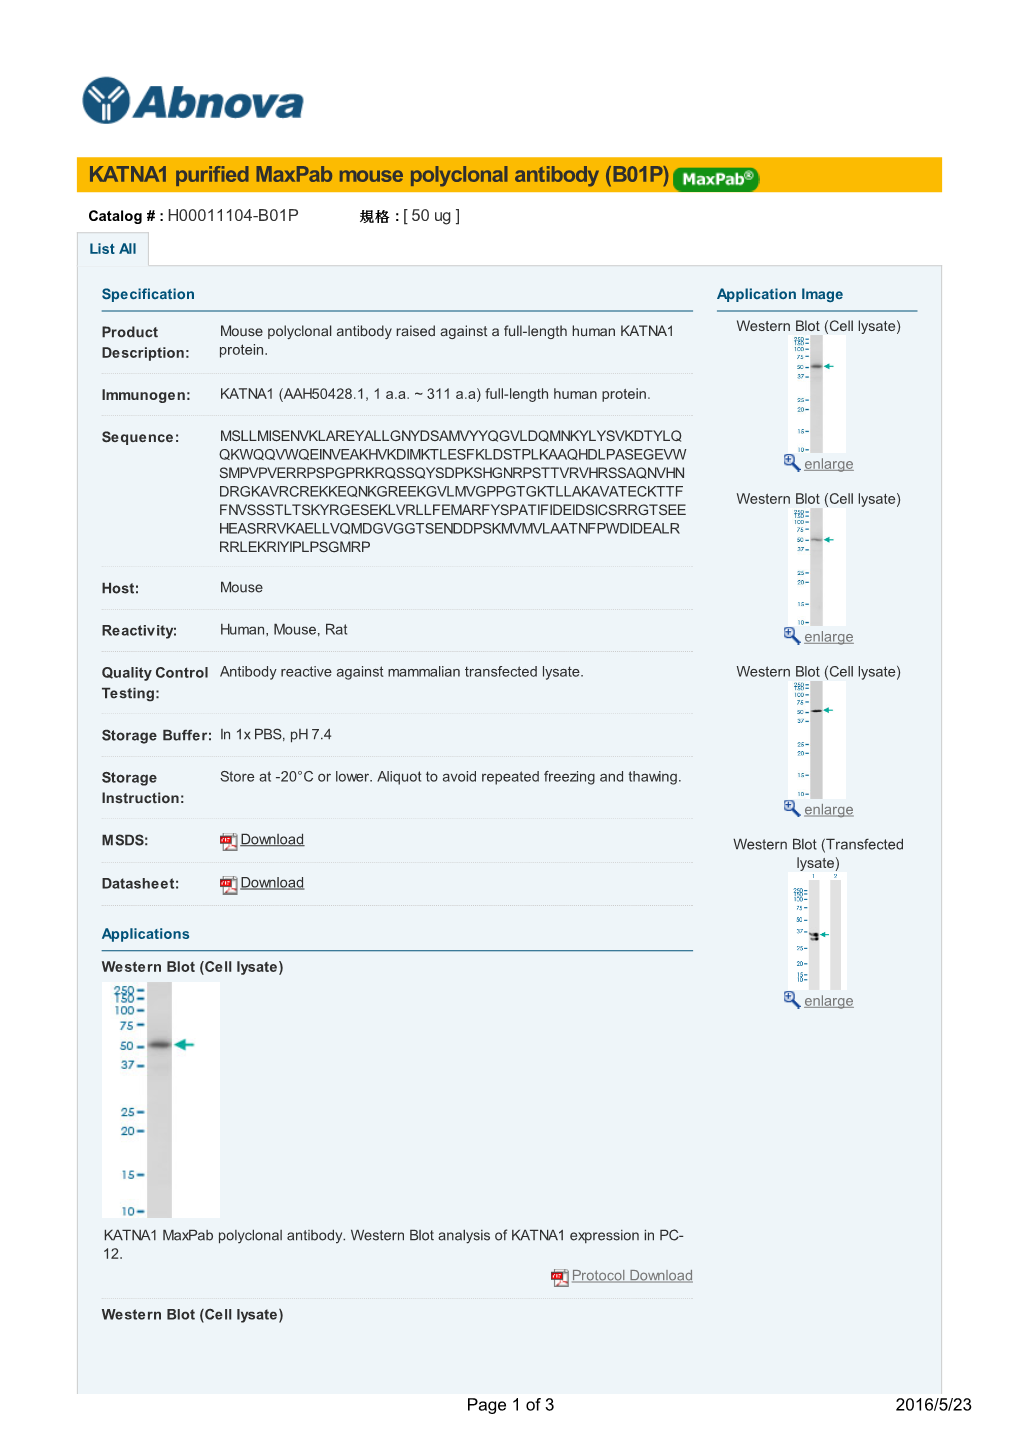 KATNA1 Purified Maxpab Mouse Polyclonal Antibody (B01P)